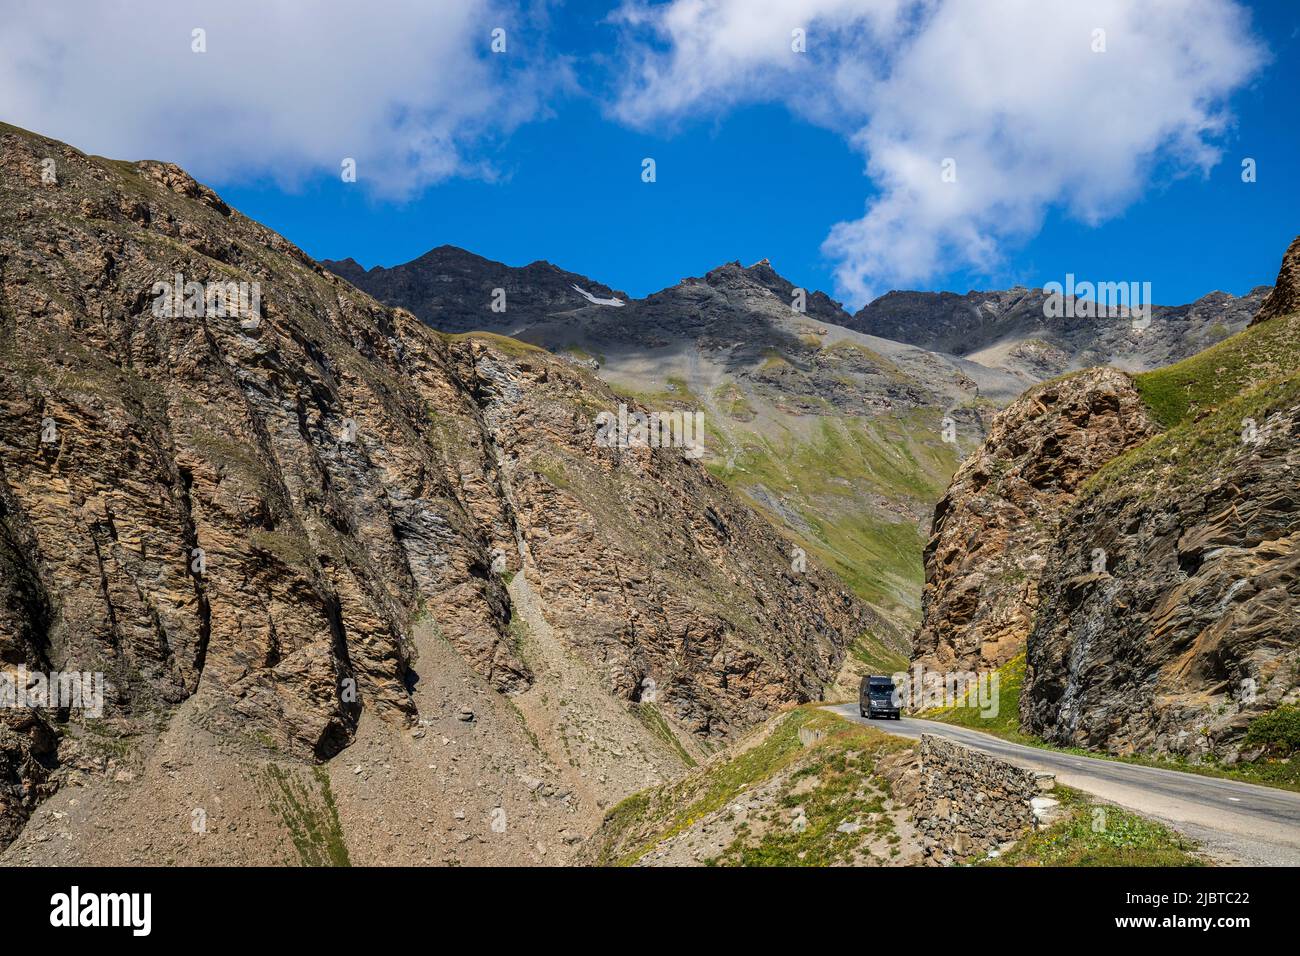 Francia, Saboya, Vanoise parque nacional, Bonneval-sur-Arc, carretera de los Grandes Alpes entre el Col de l'Iseran y Bonneval-sur-Arc Foto de stock